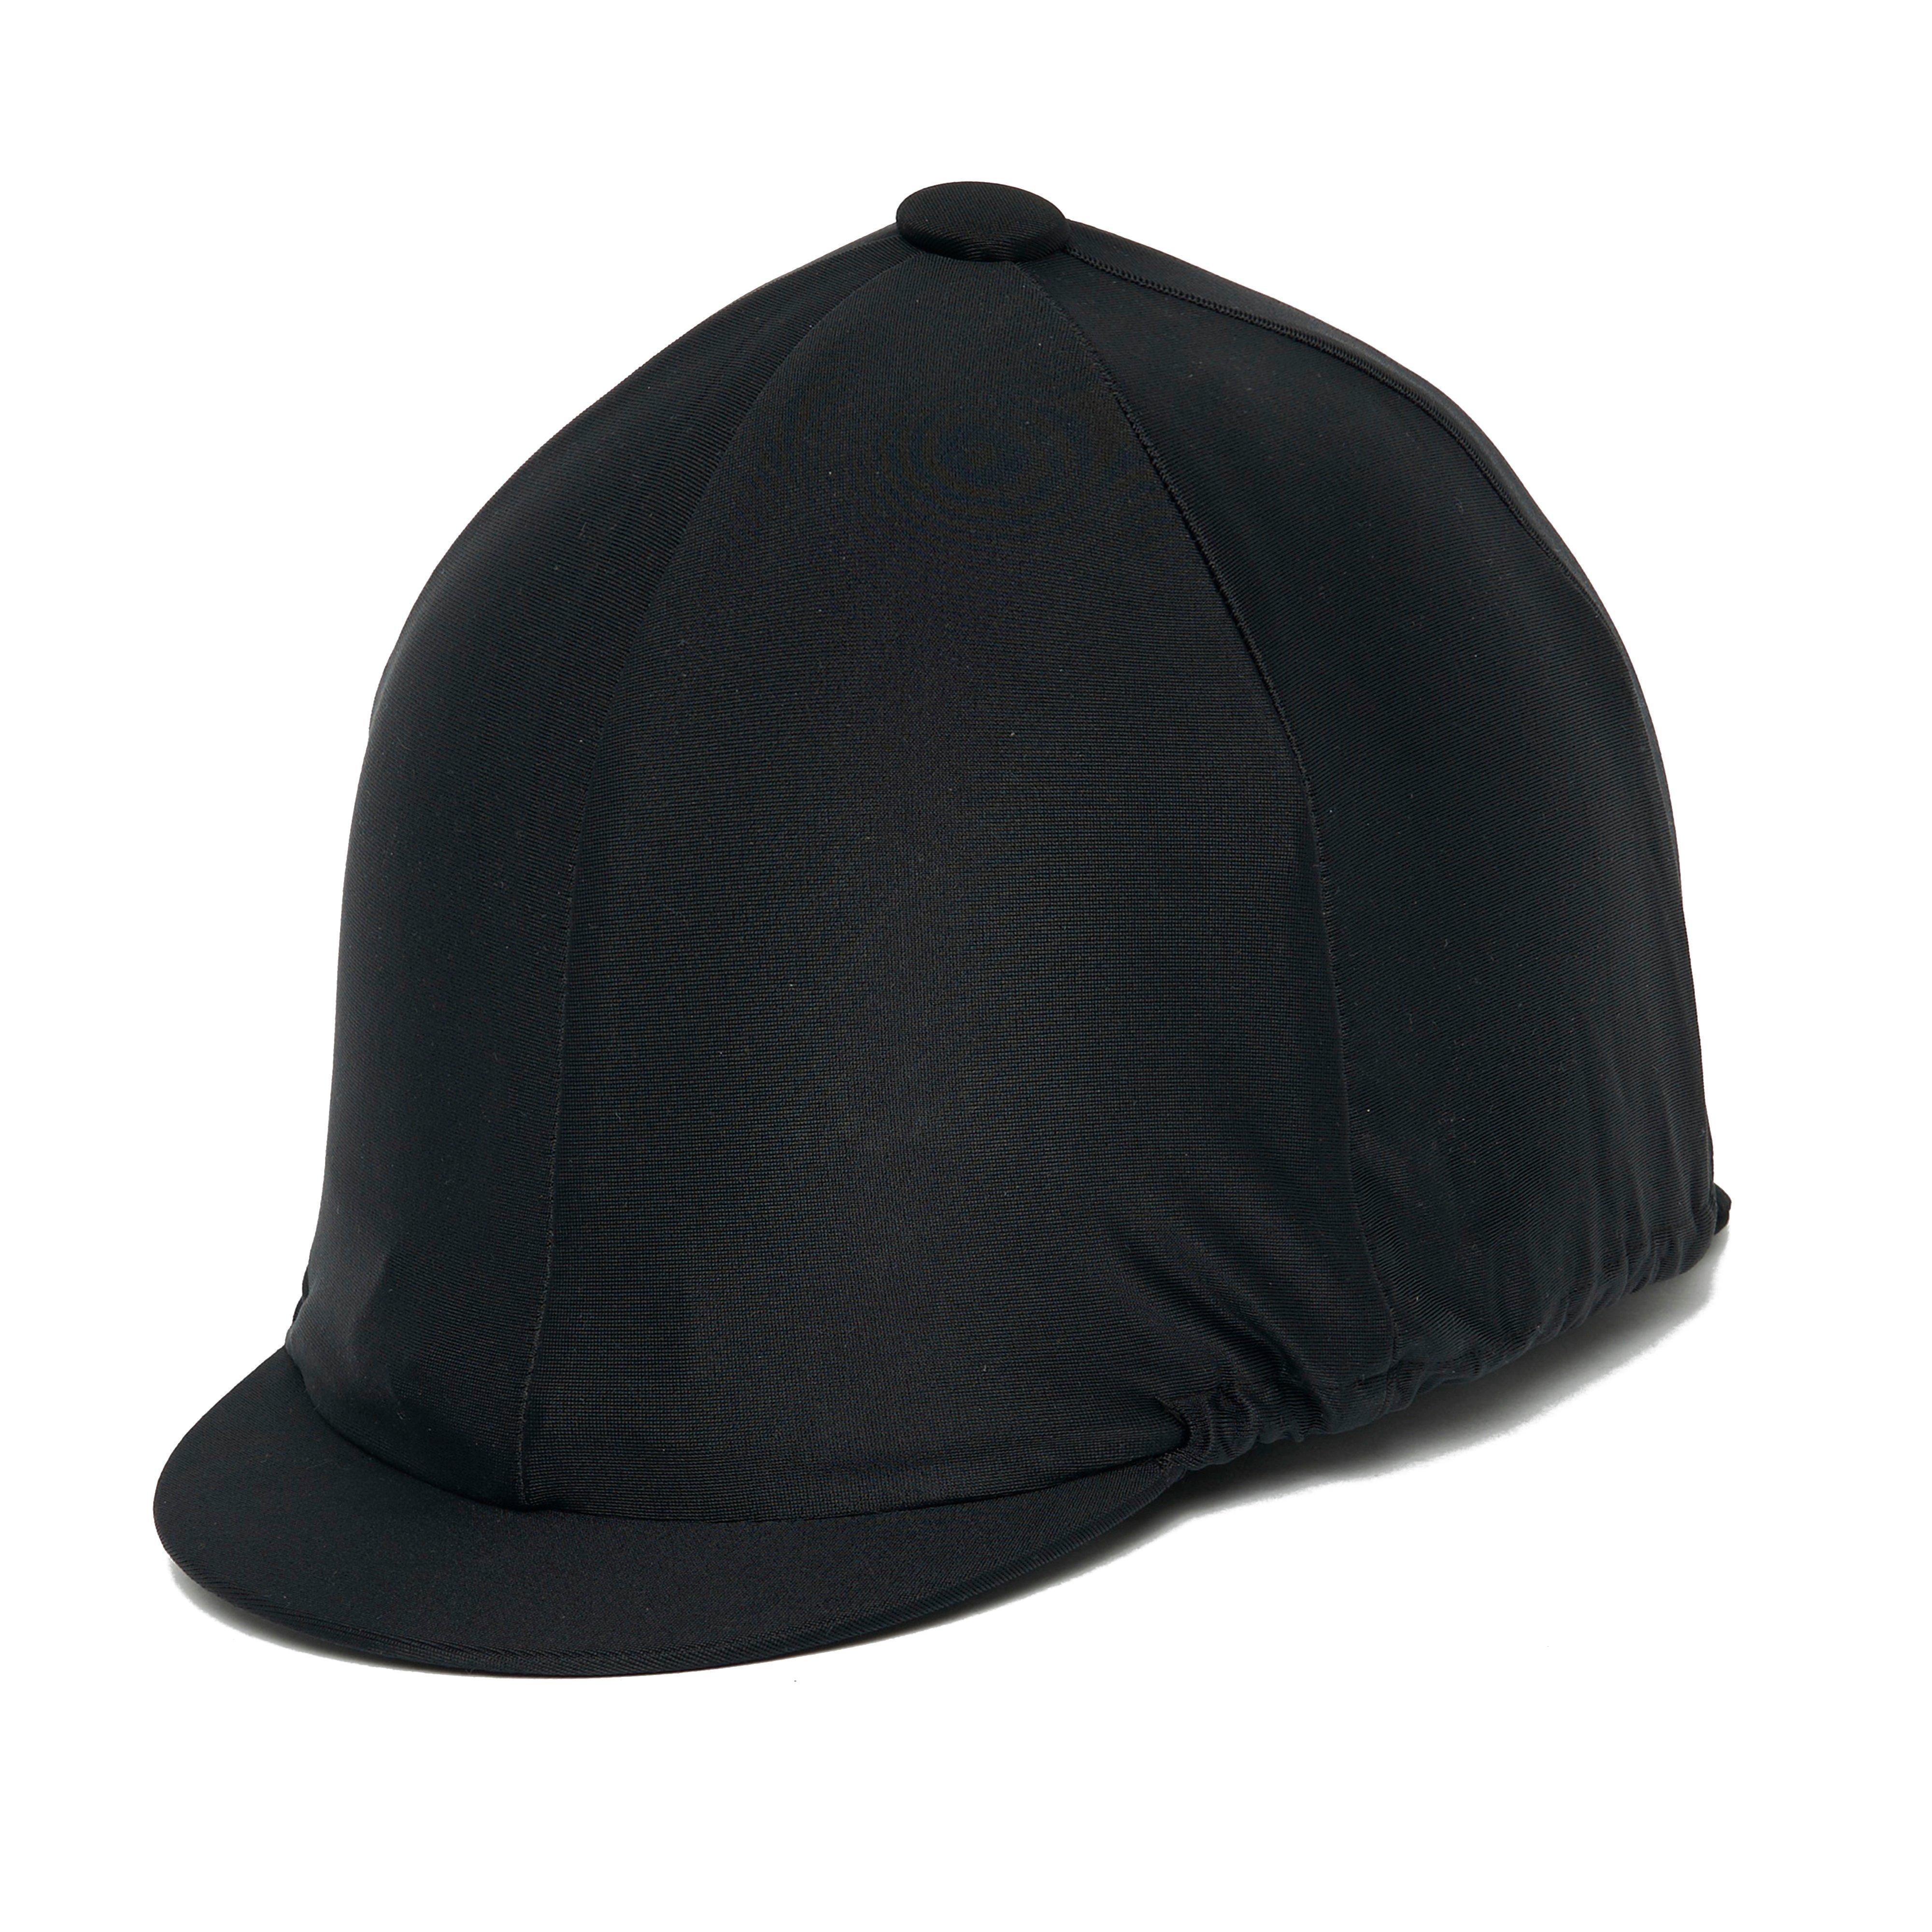 Plain Hat Cover Black